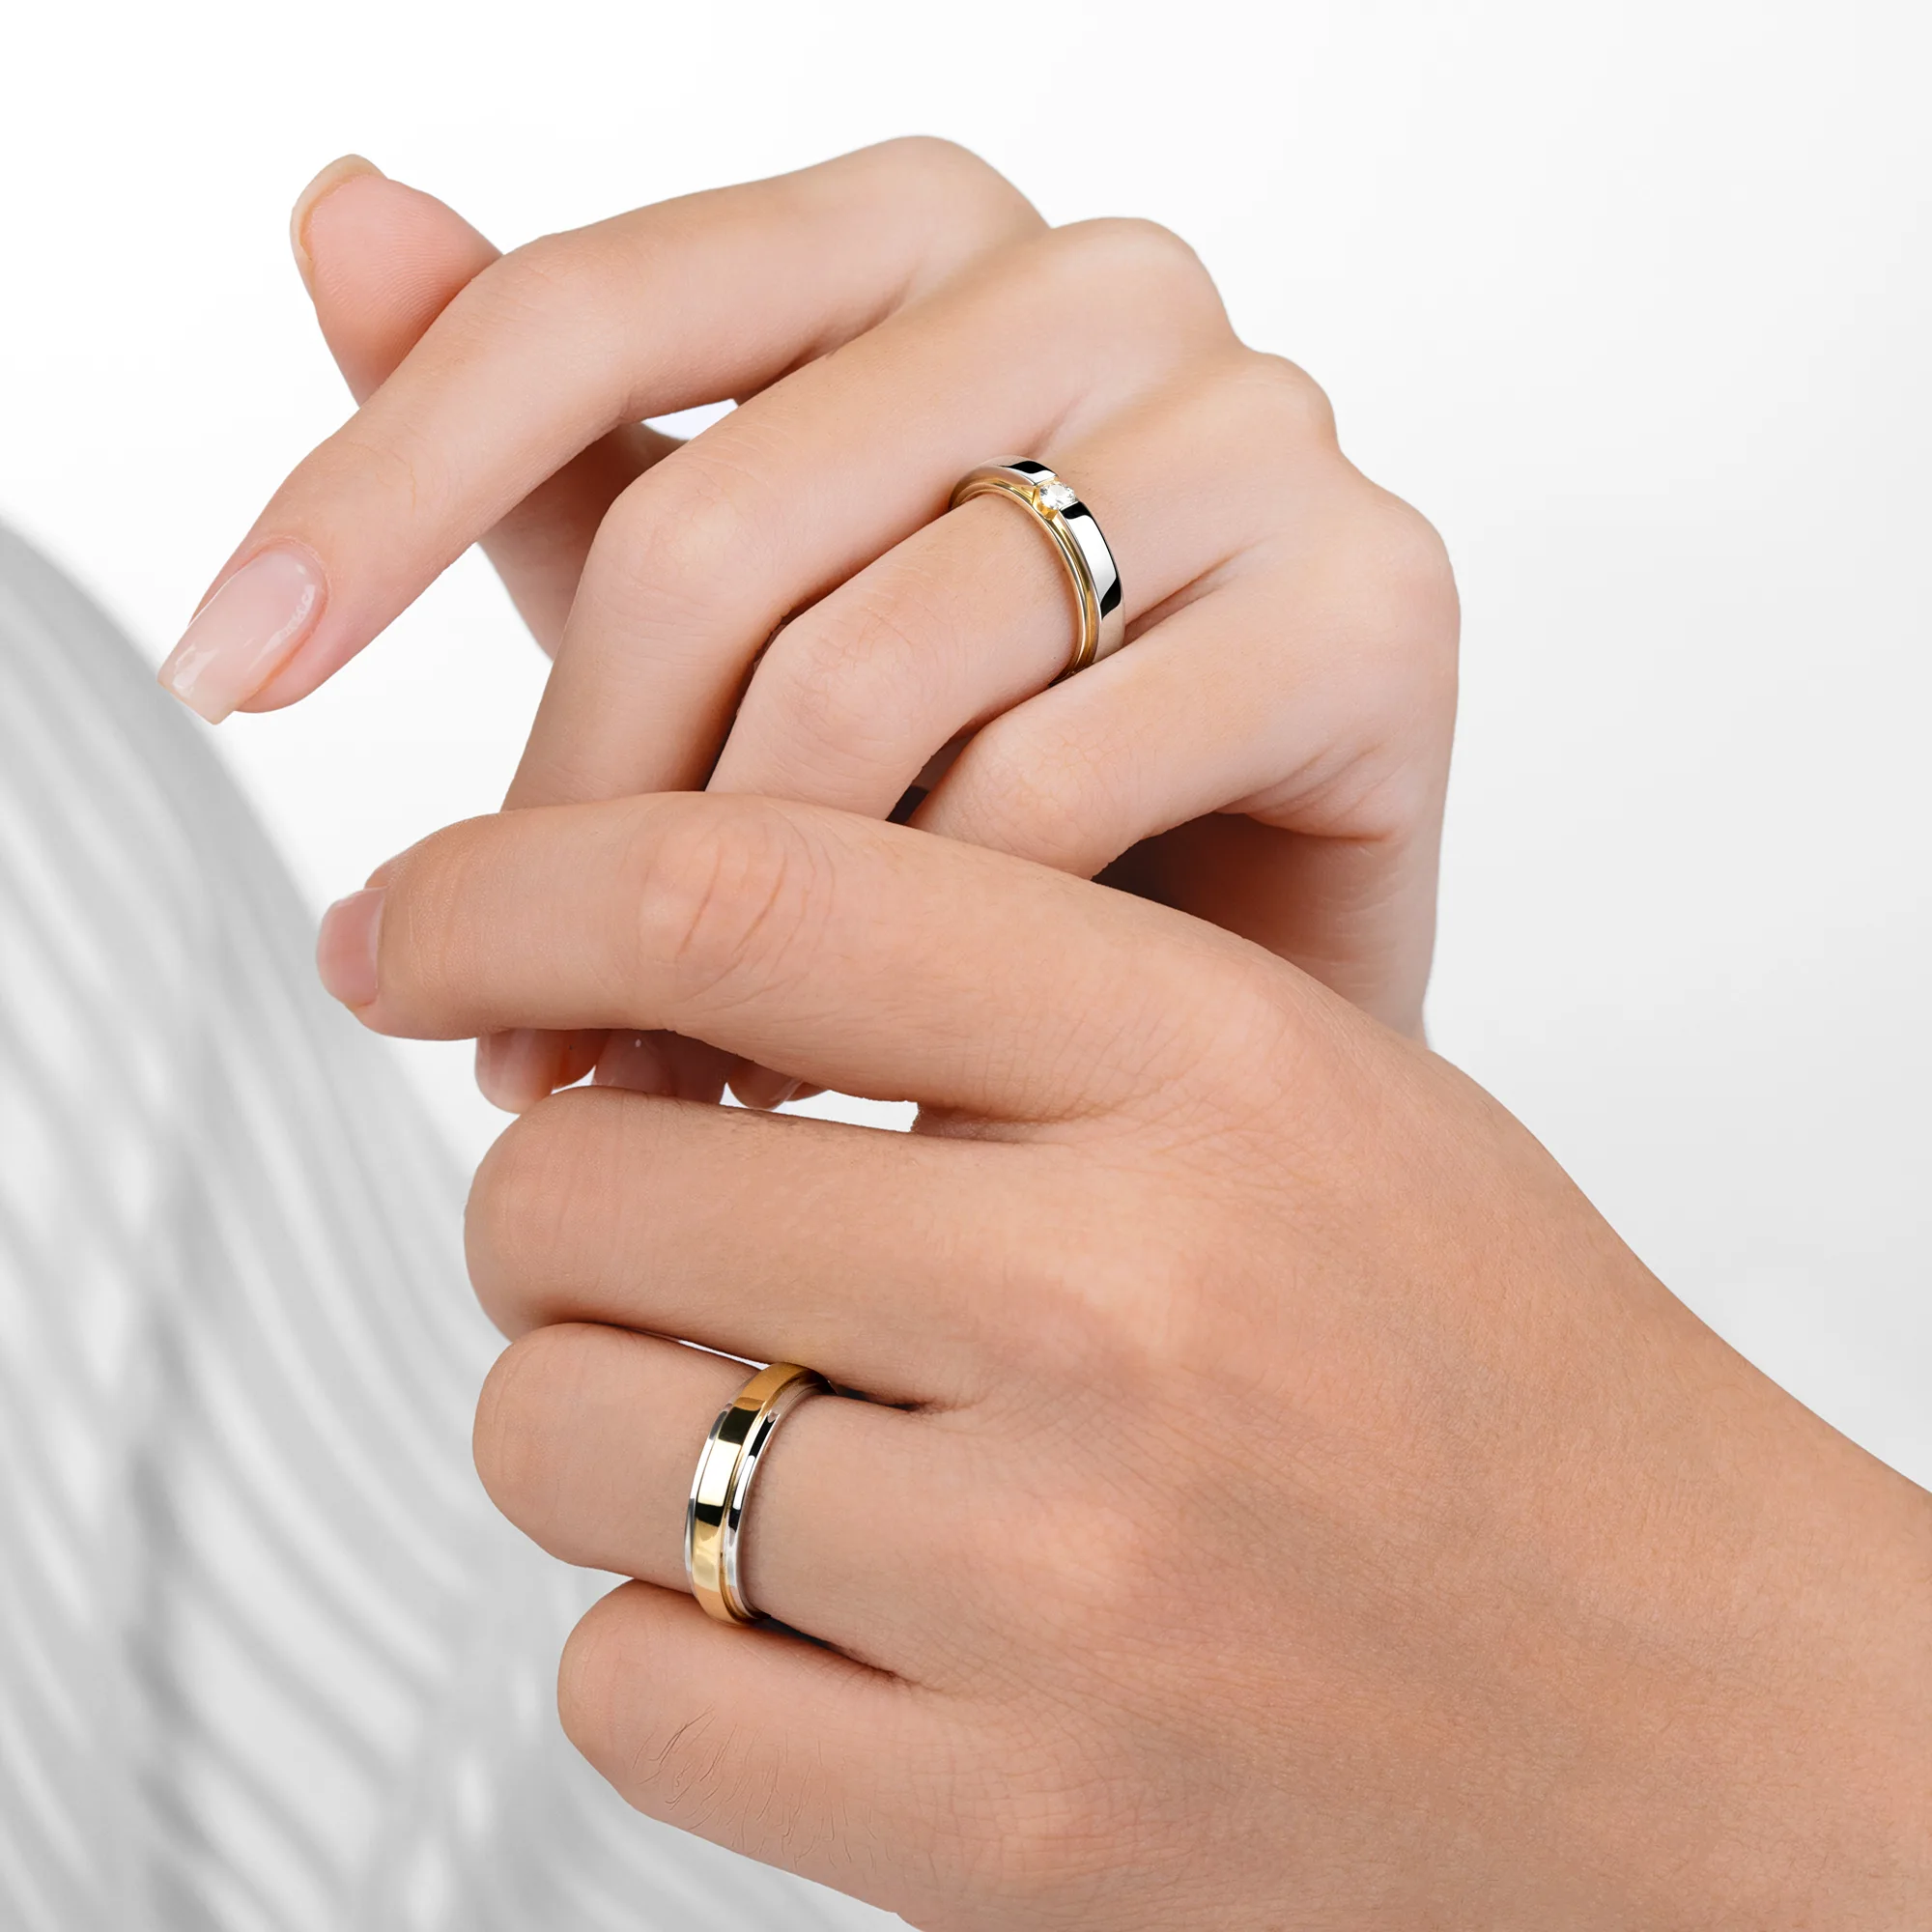 Cặp nhẫn cưới hiện đại NCC2014 6